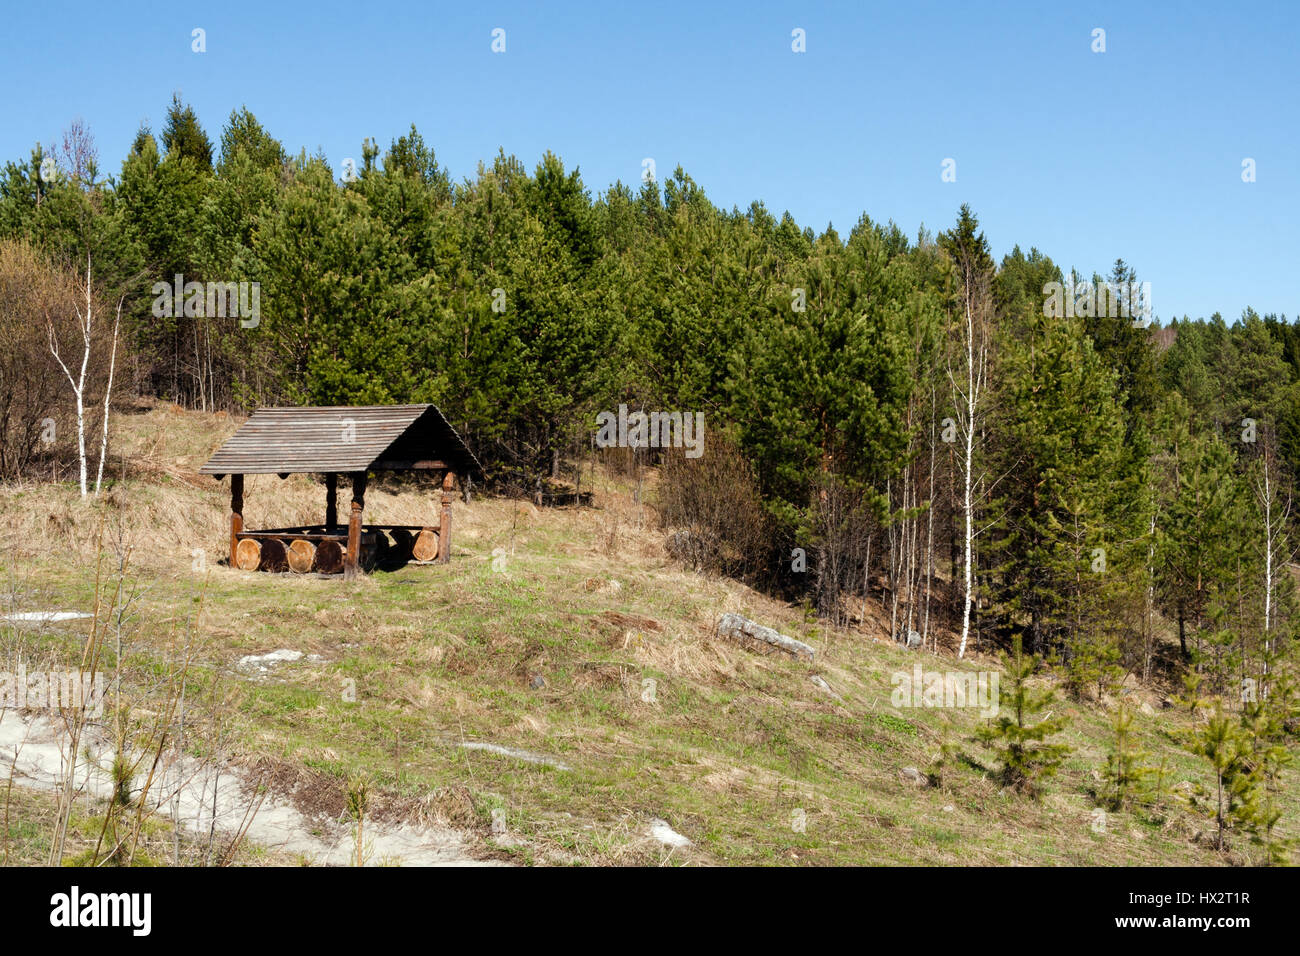 Wooden pergola on hillside near pine forest in spring. Stock Photo